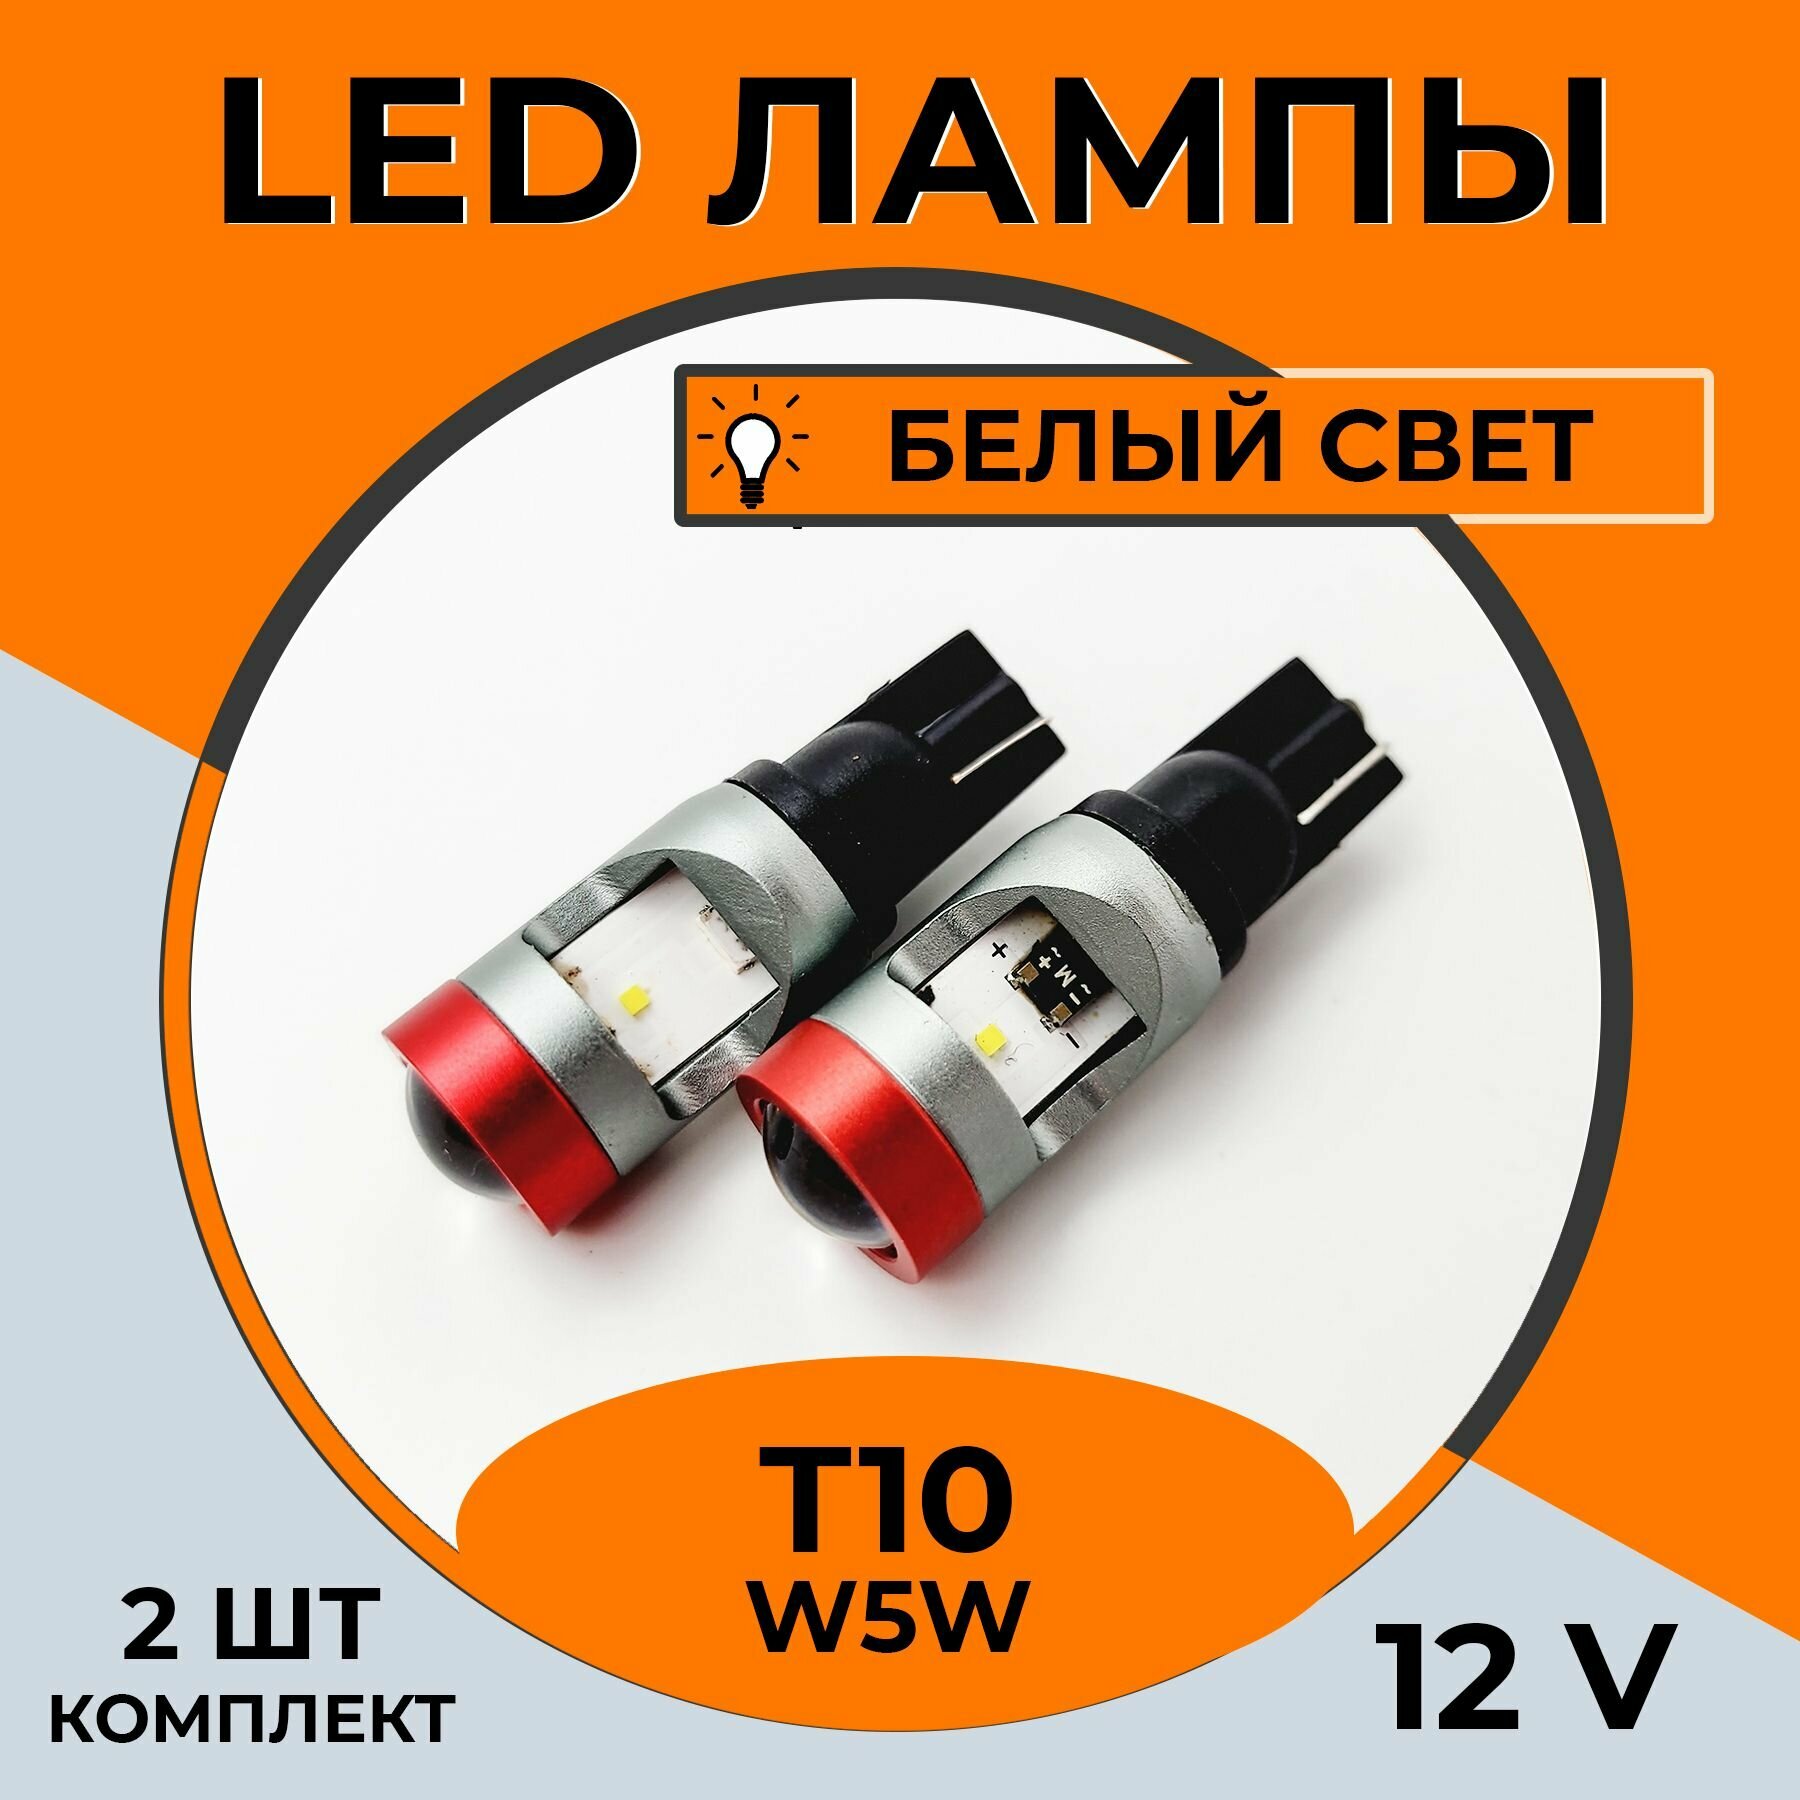 Автомобильная светодиодная LED лампа T10 W5W для подсветки салона, багажника, номерного знака, 12в белый свет, 2 шт